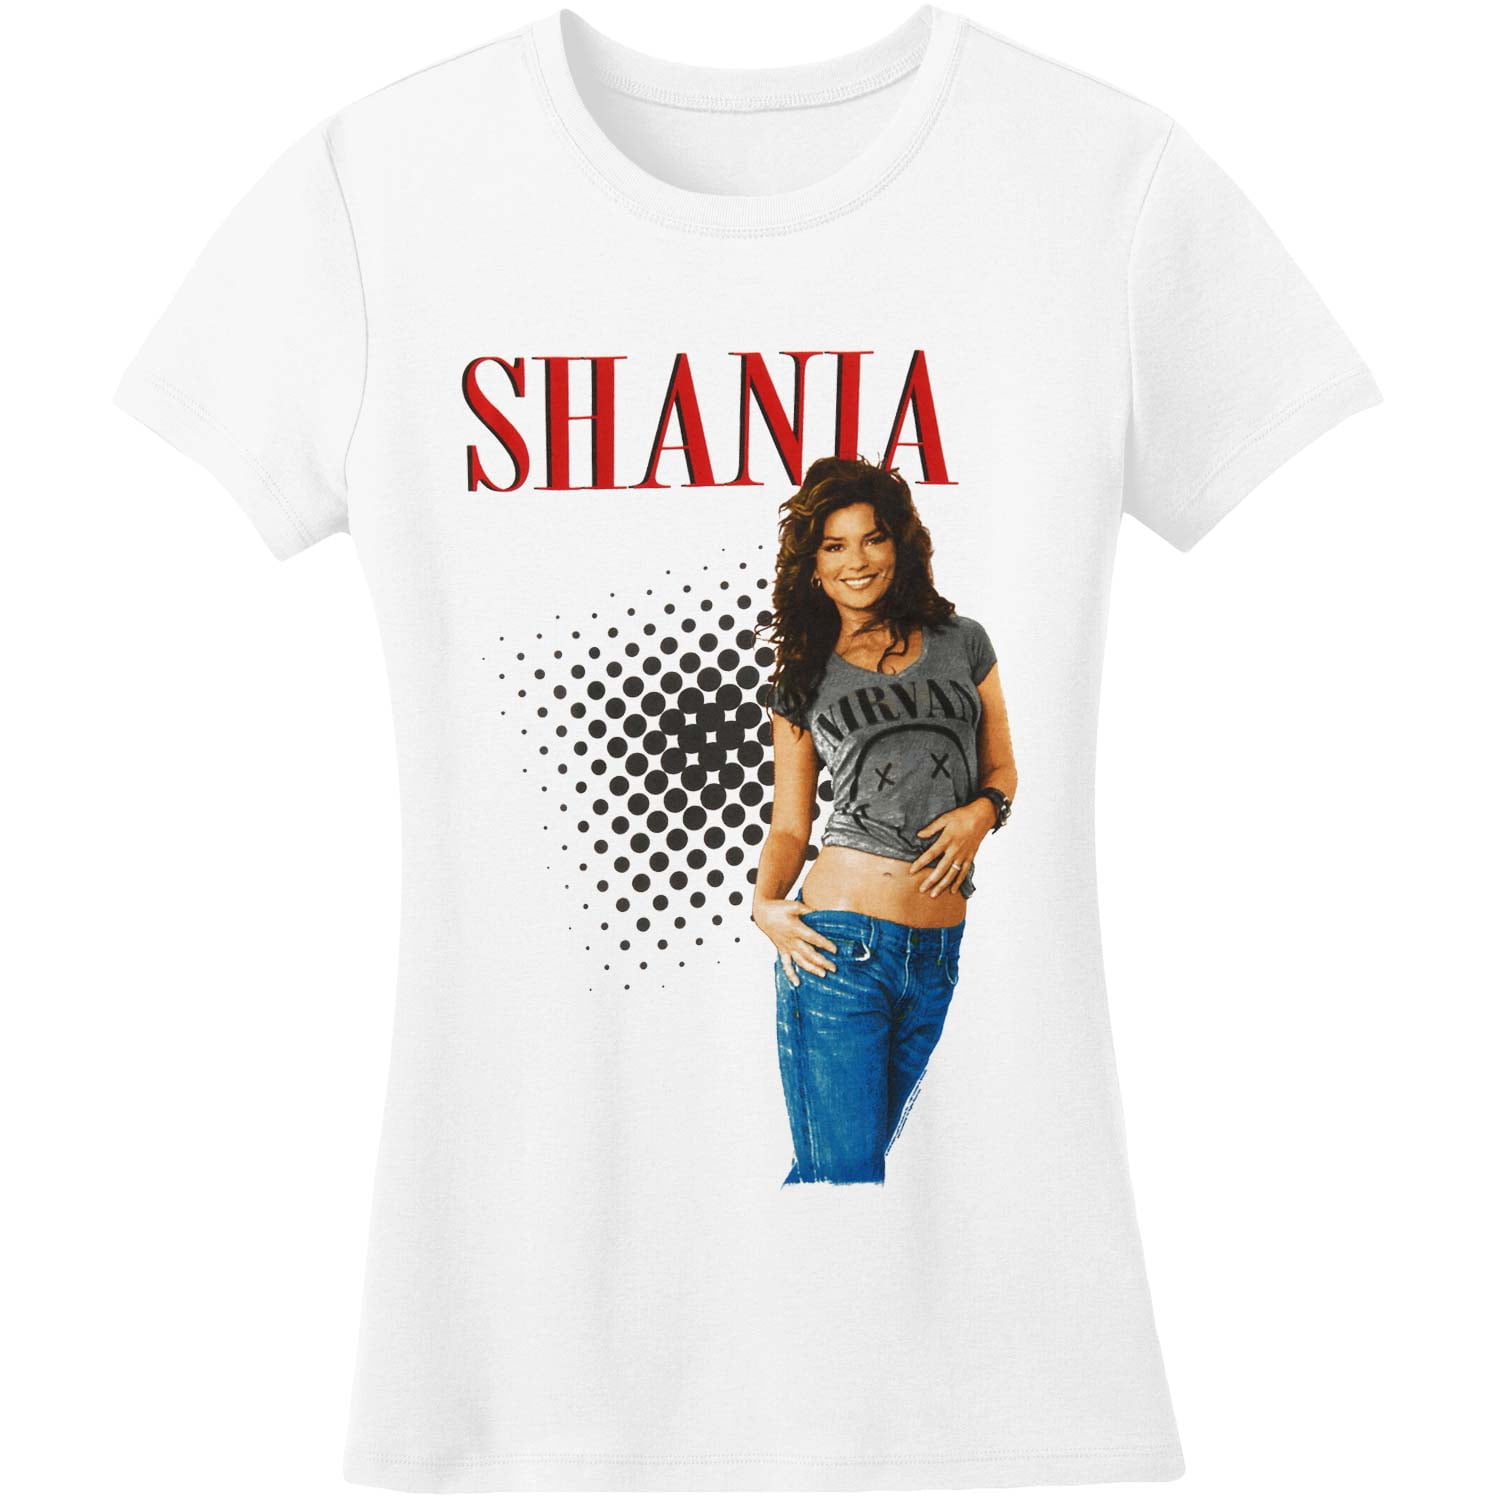 Shania Twain - Shania Twain Shania Tee Graphic Girls Jr White - Walmart ...